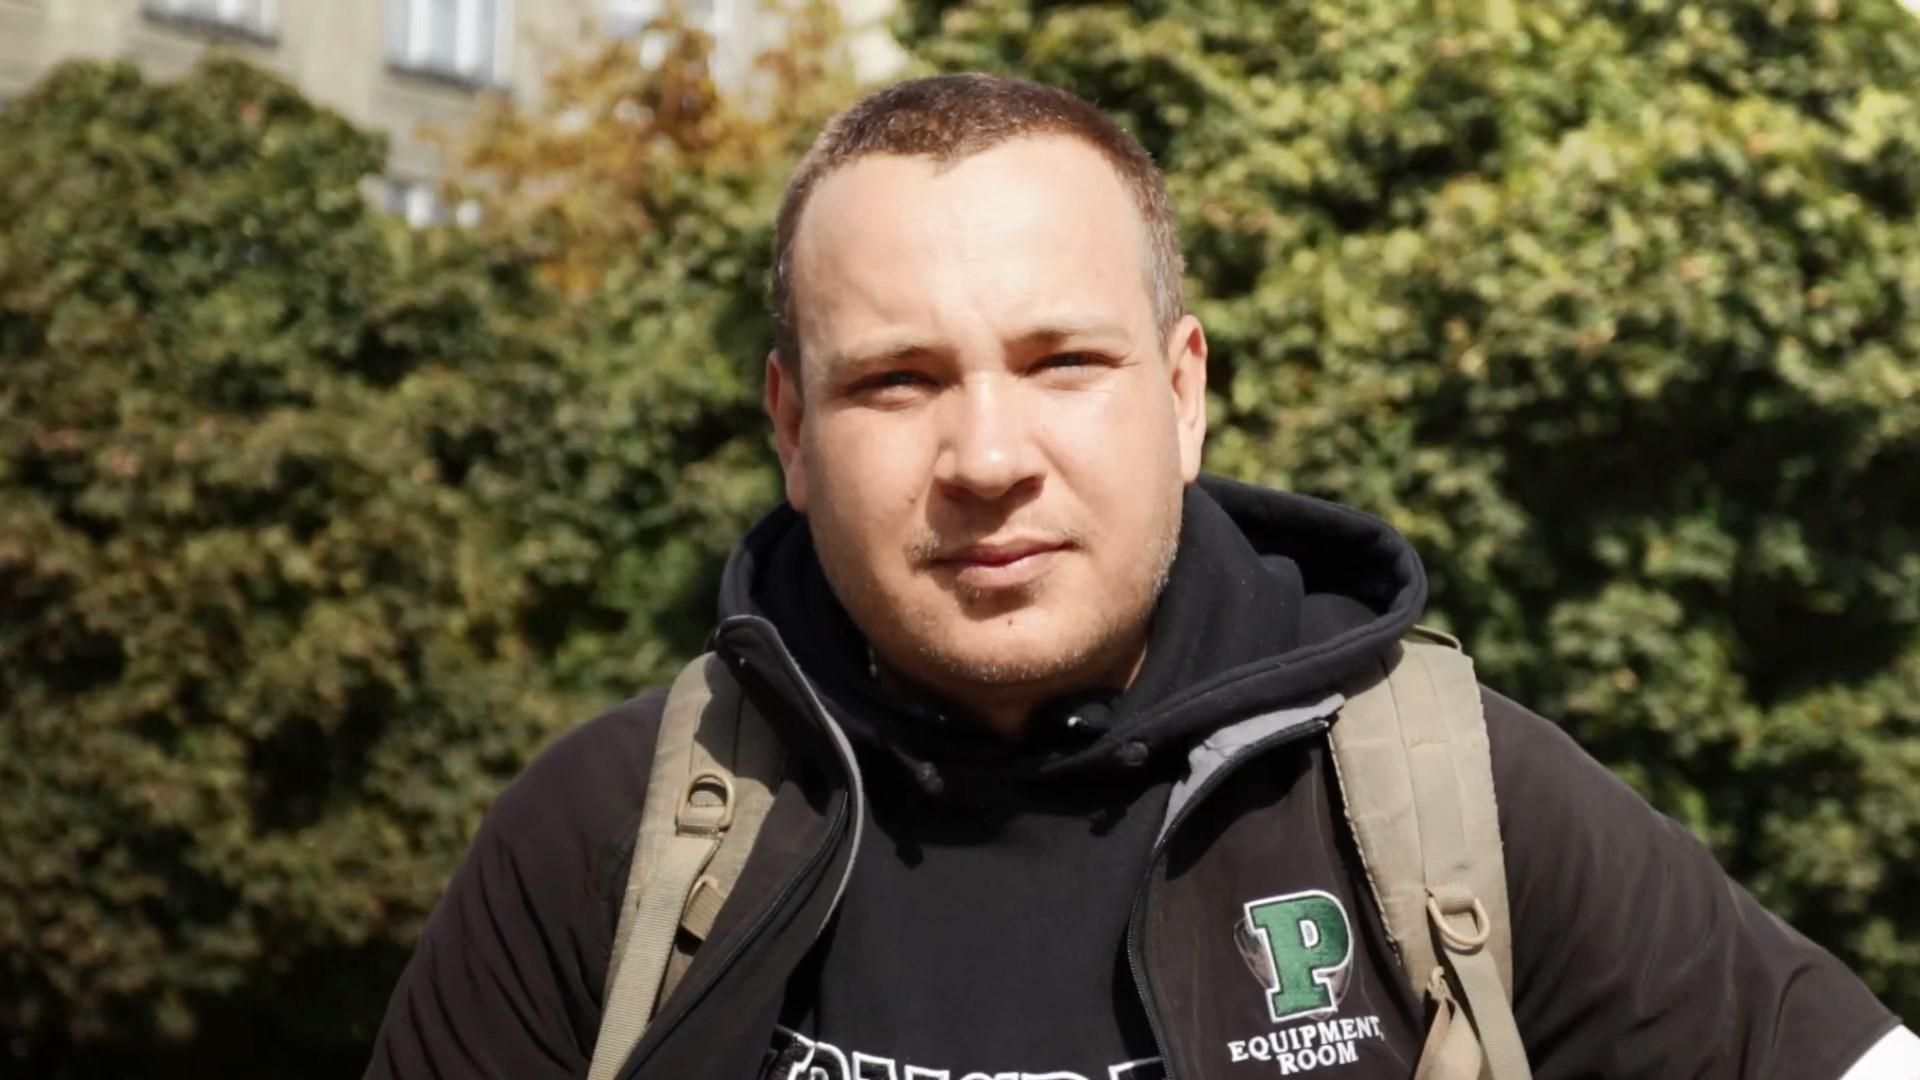 Відрізаним пальцем змусили писати "Слава Україні", – волонтер про катування в окупантів